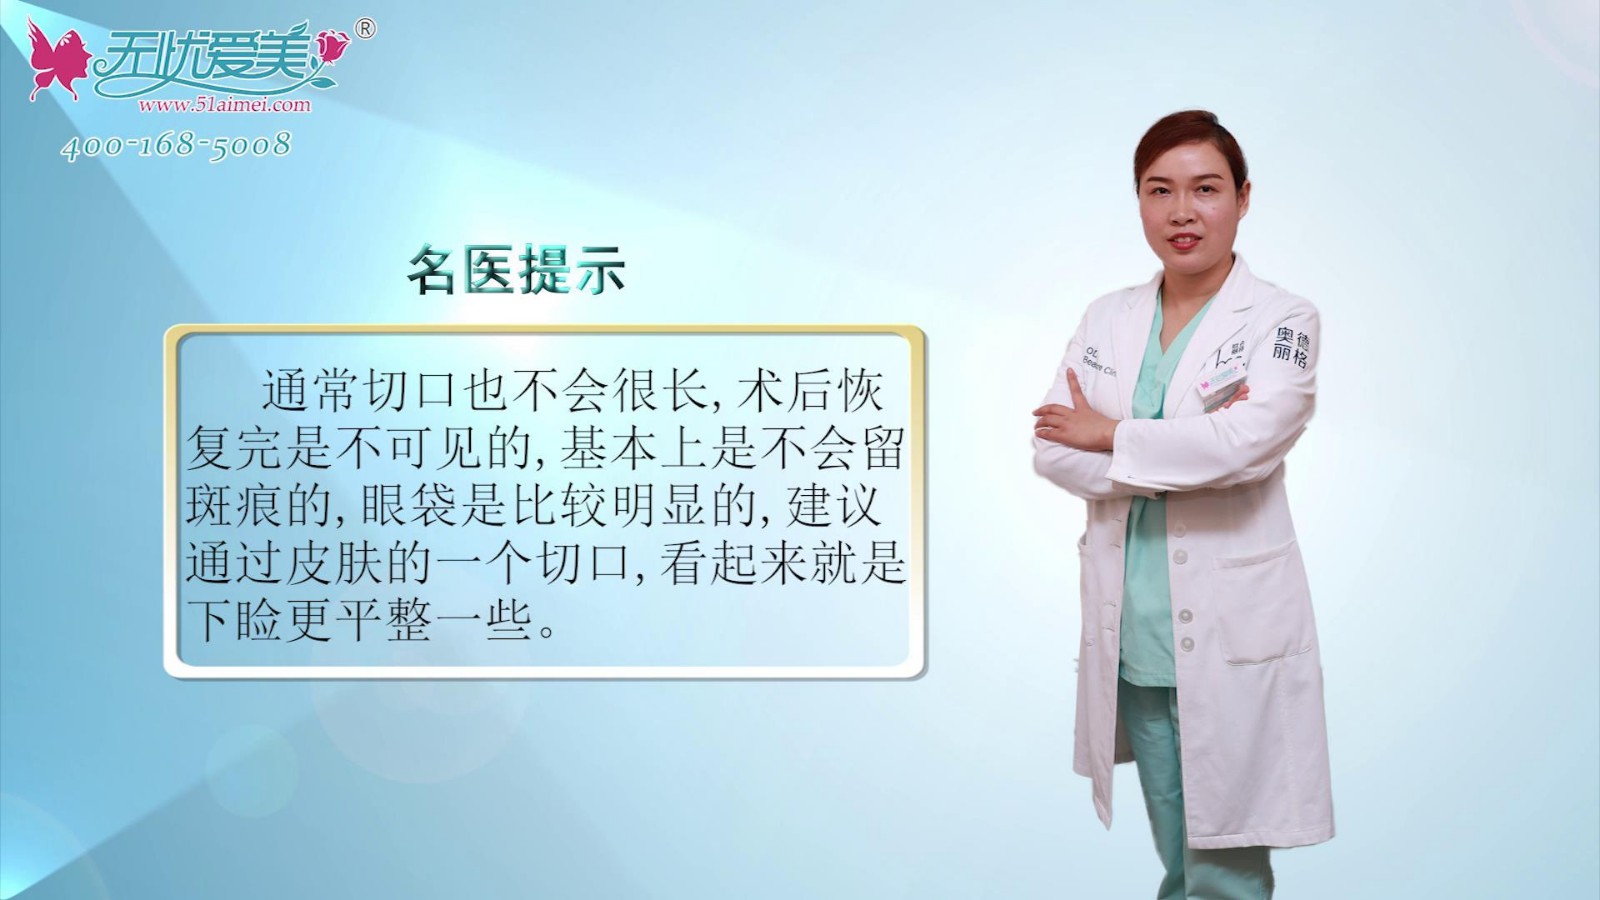 北京奥德丽格马晓艳彩贝视频专访外切去眼袋手术效果如何